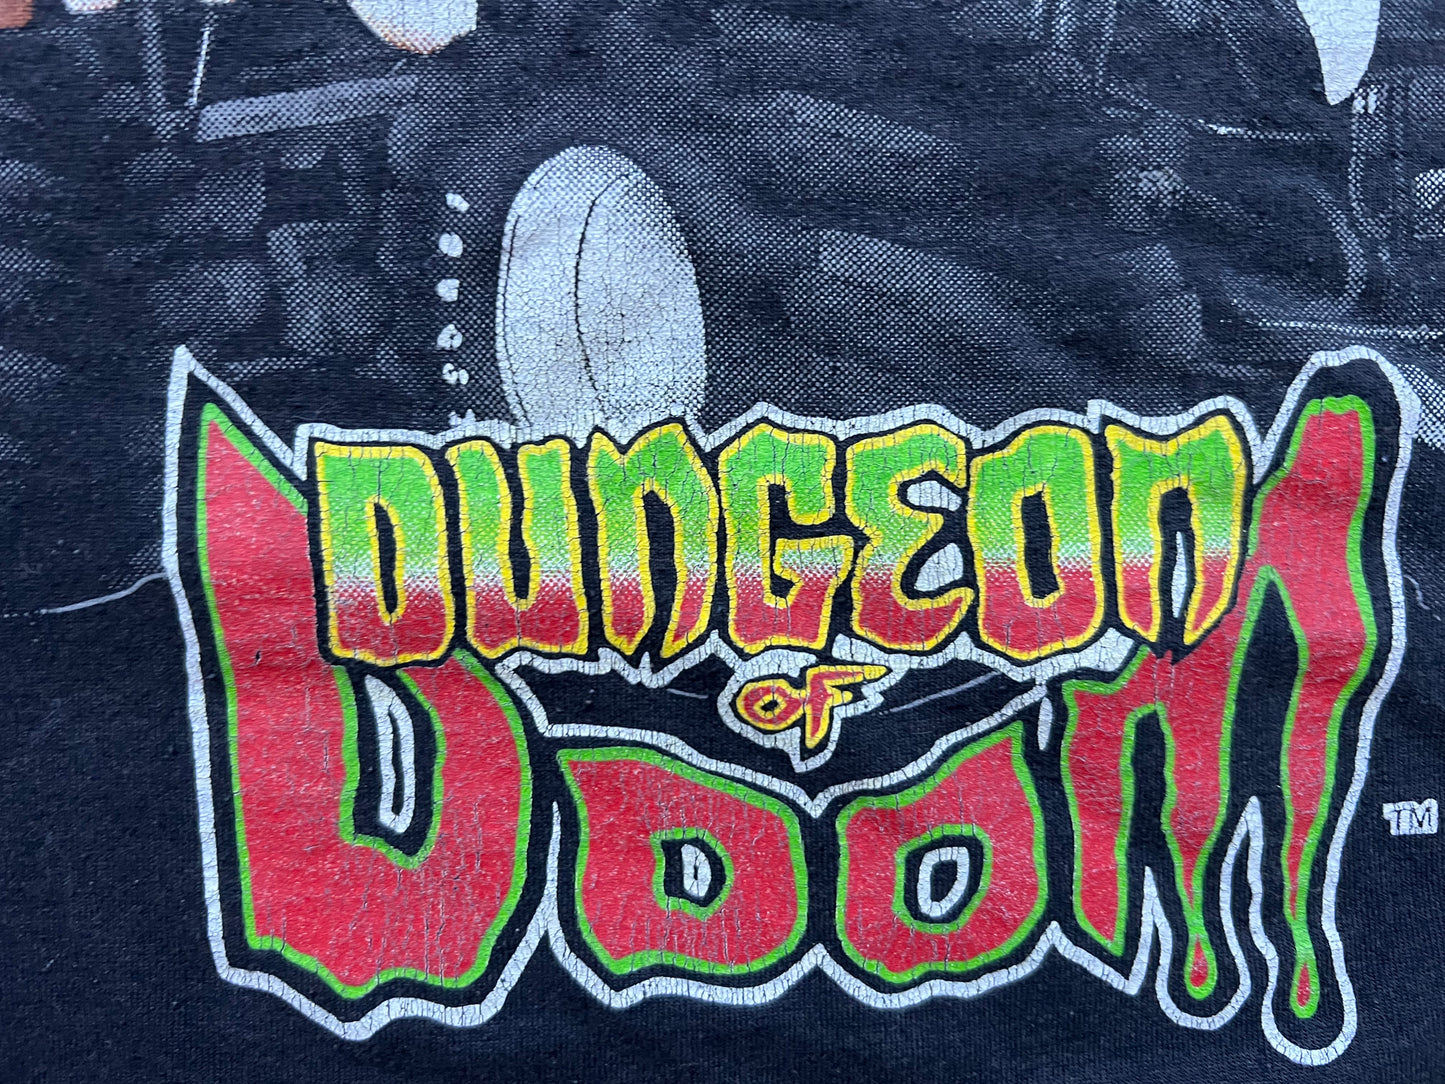 1995 WCW Dungeon of Doom Monster truck shirt